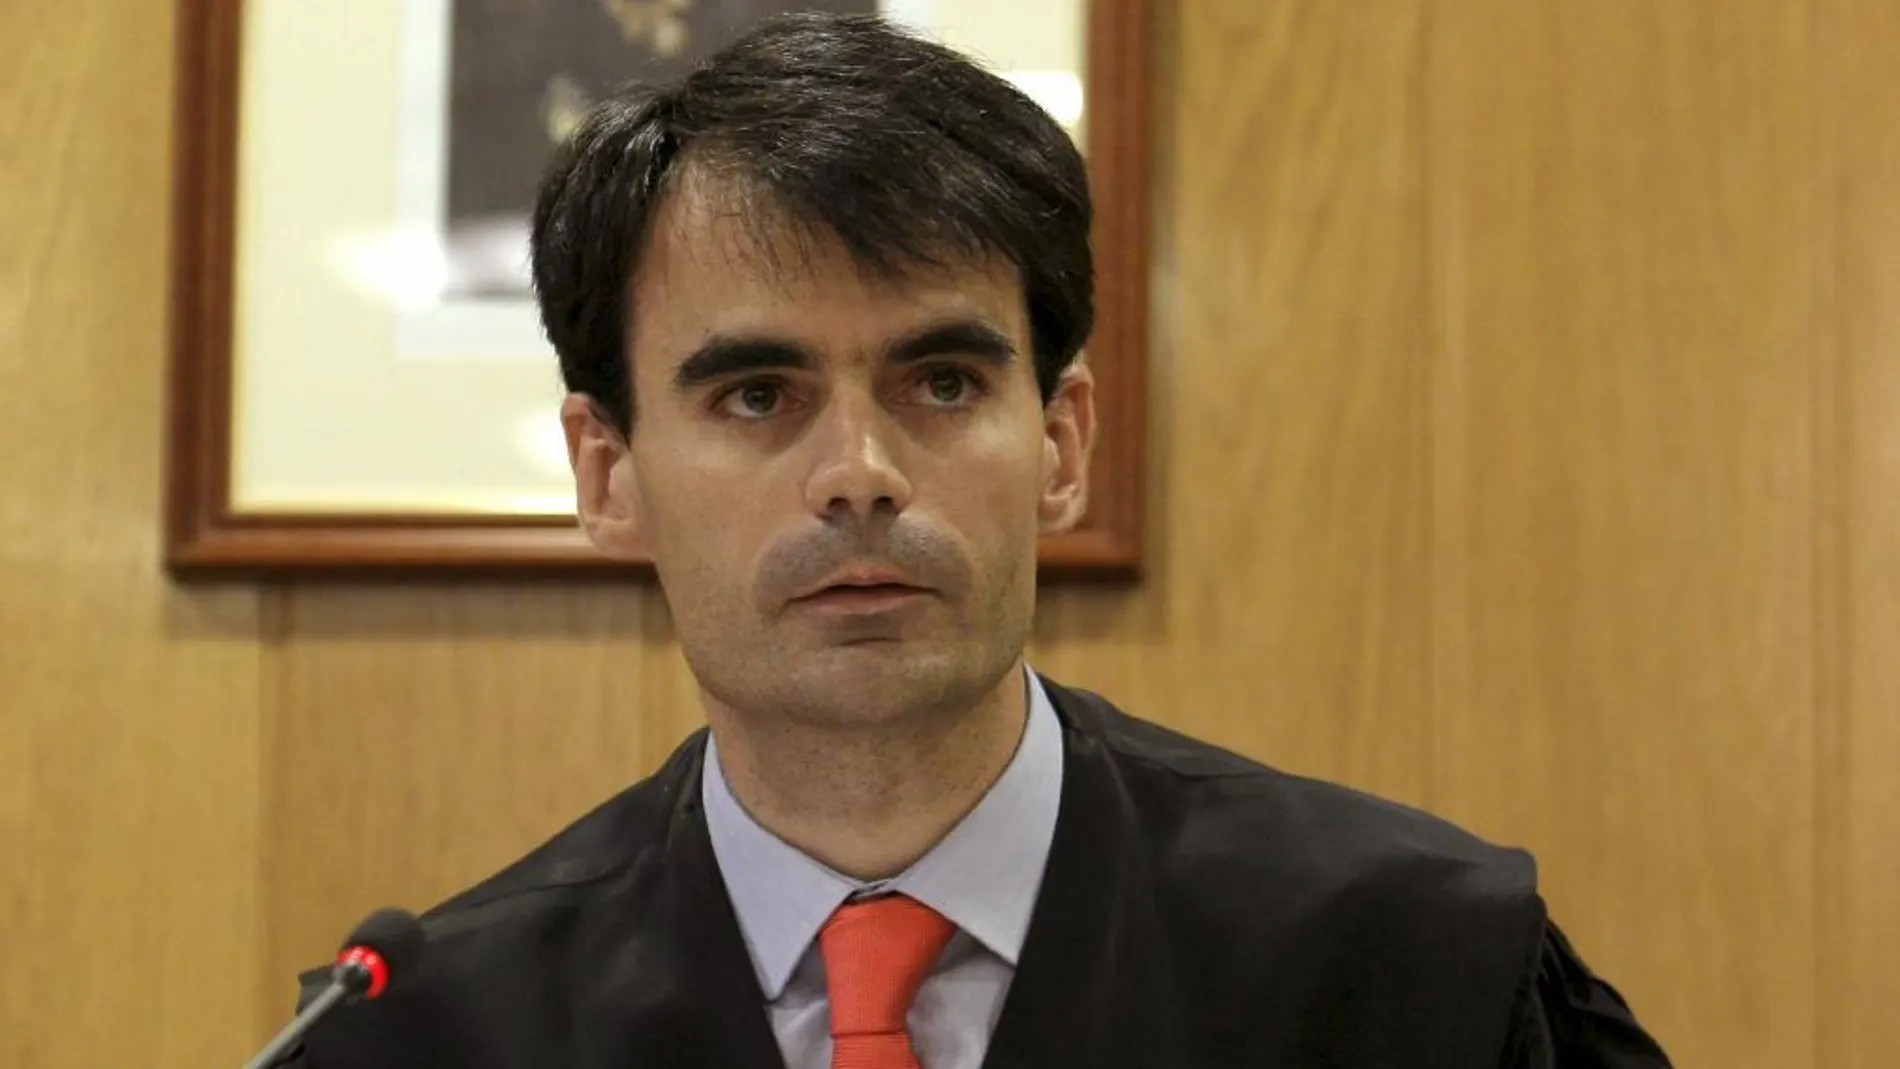 El magistrado Pablo Rafael Ruz Gutiérrez tras ser nombrado por el Consejo General del Poder Judicial (CGPJ) como sustituto del juez Baltasar Garzón